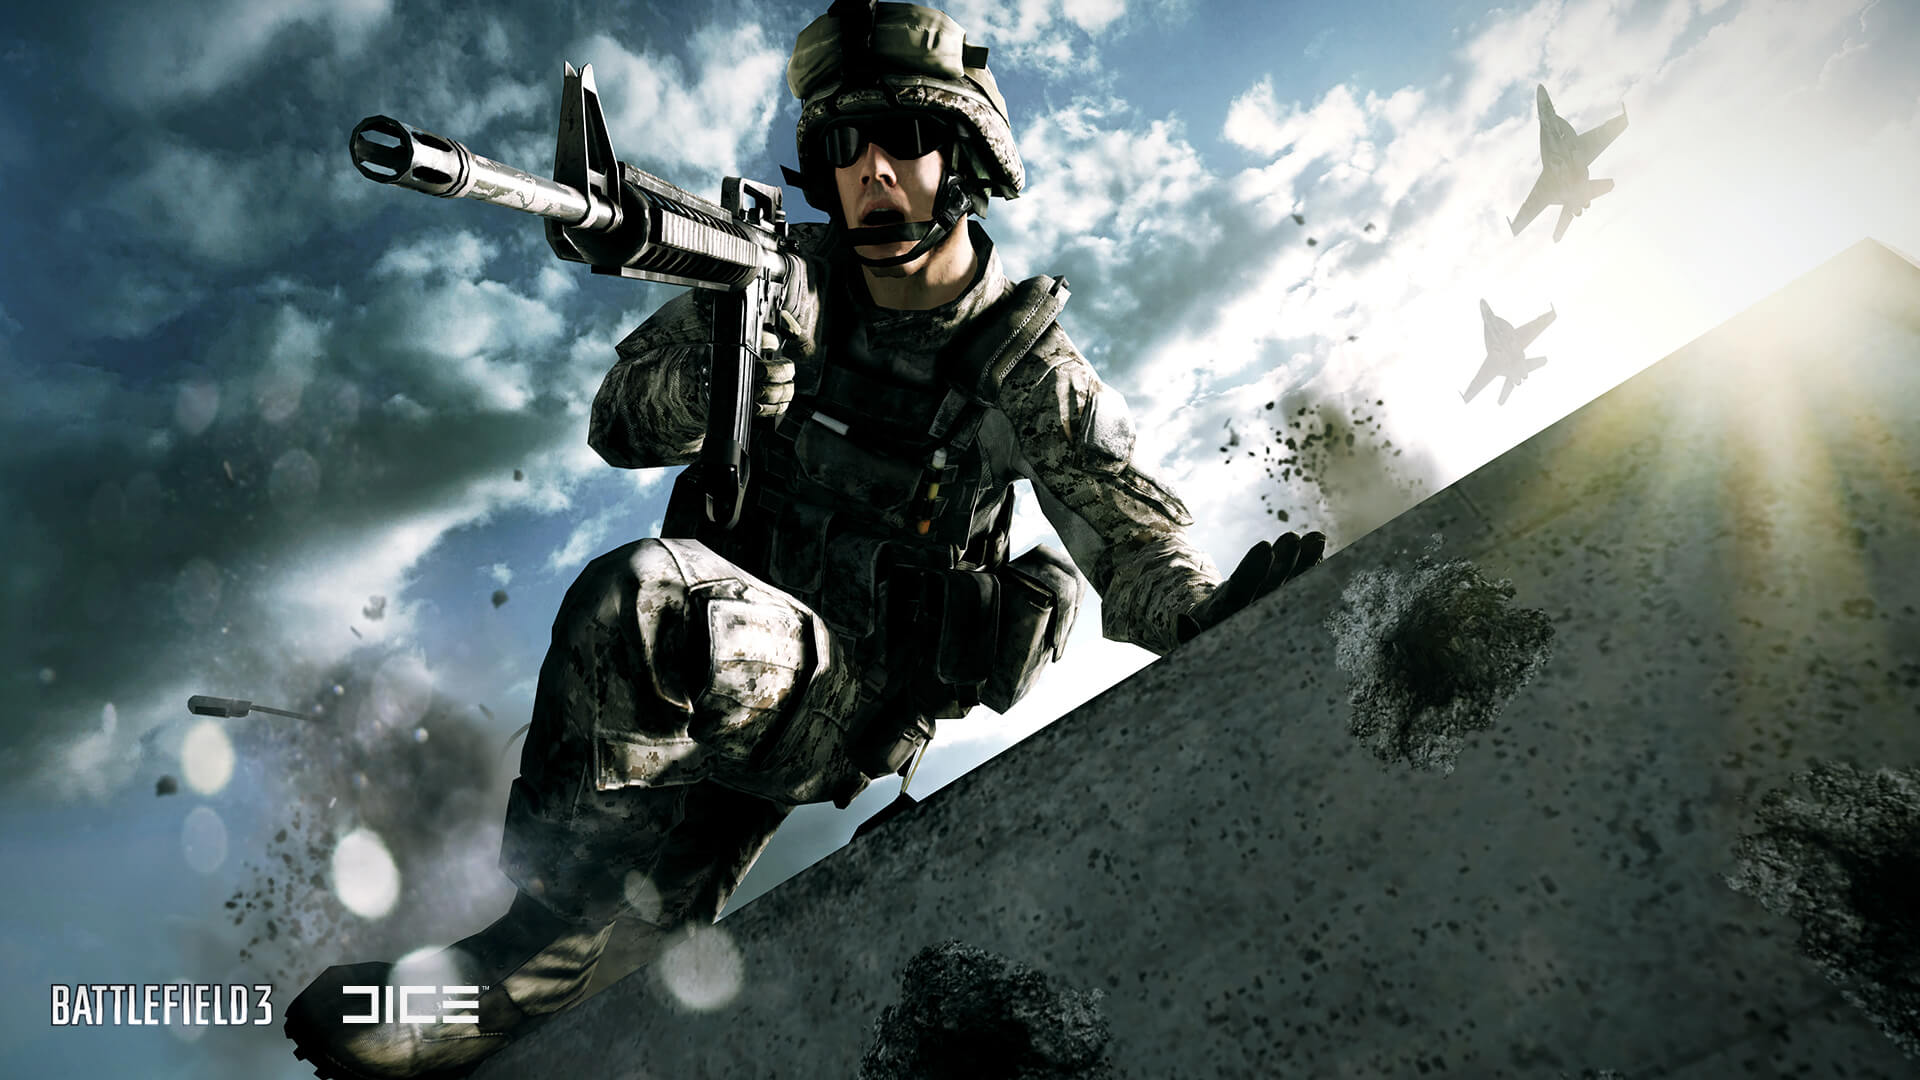 АНОНСЫ,ВИДЕО И СКРИНШОТЫ Купить аккаунт Battlefield 3 Premium + Подарки + Гарантия на Origin-Sell.com